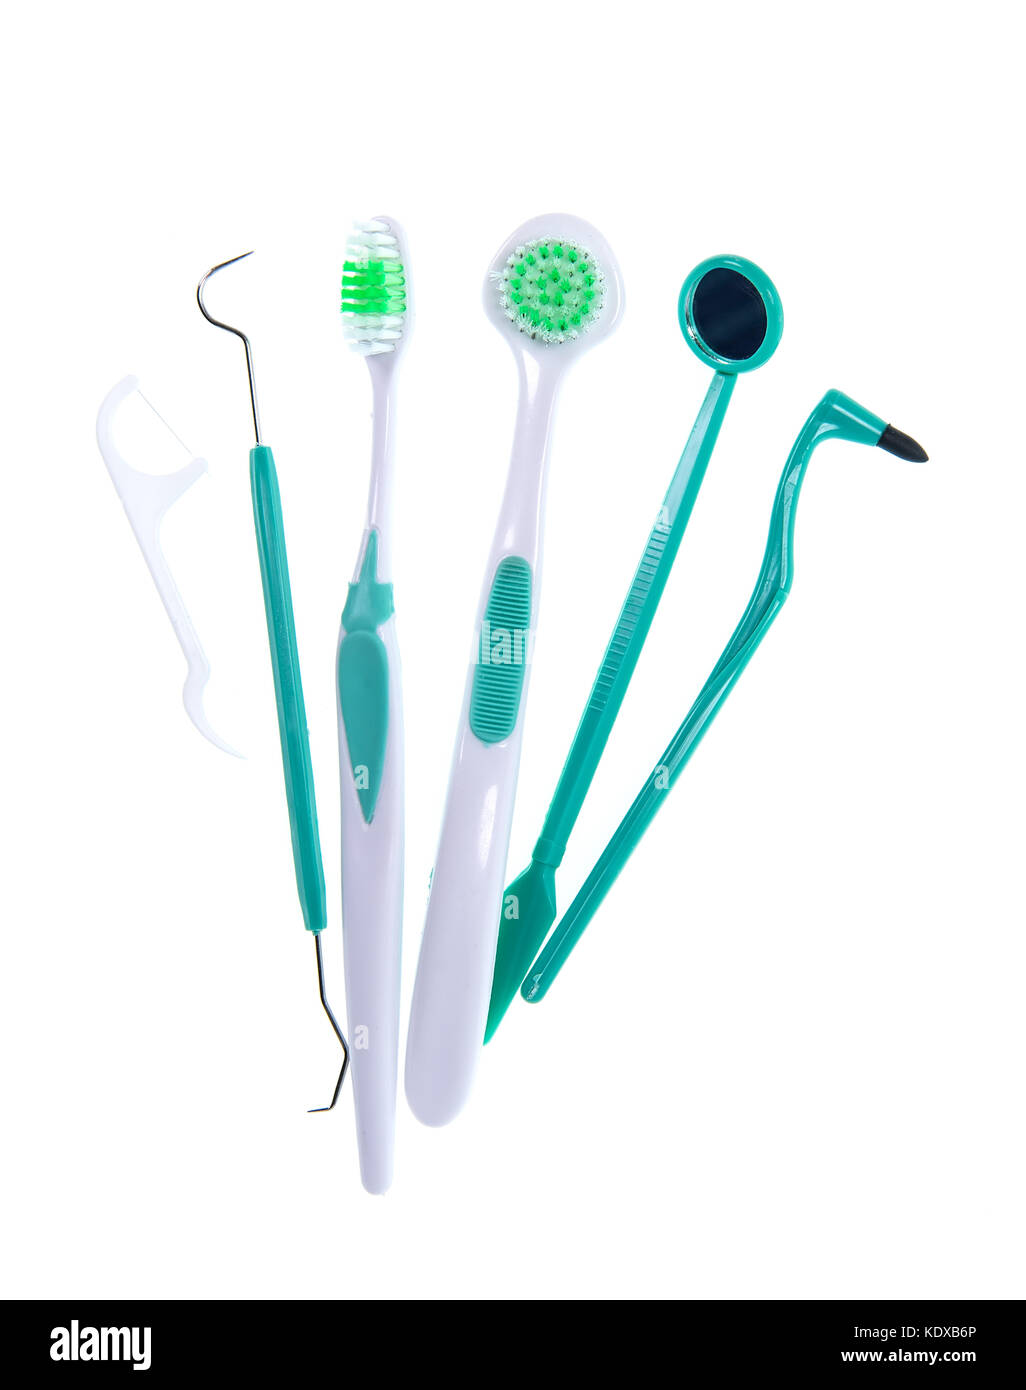 Ensemble d'outils de nettoyage dentaire y compris une brosse à dents fil dentaire fil dentaire en plastique jetables et outil dans un concept d'hygiène buccale Banque D'Images